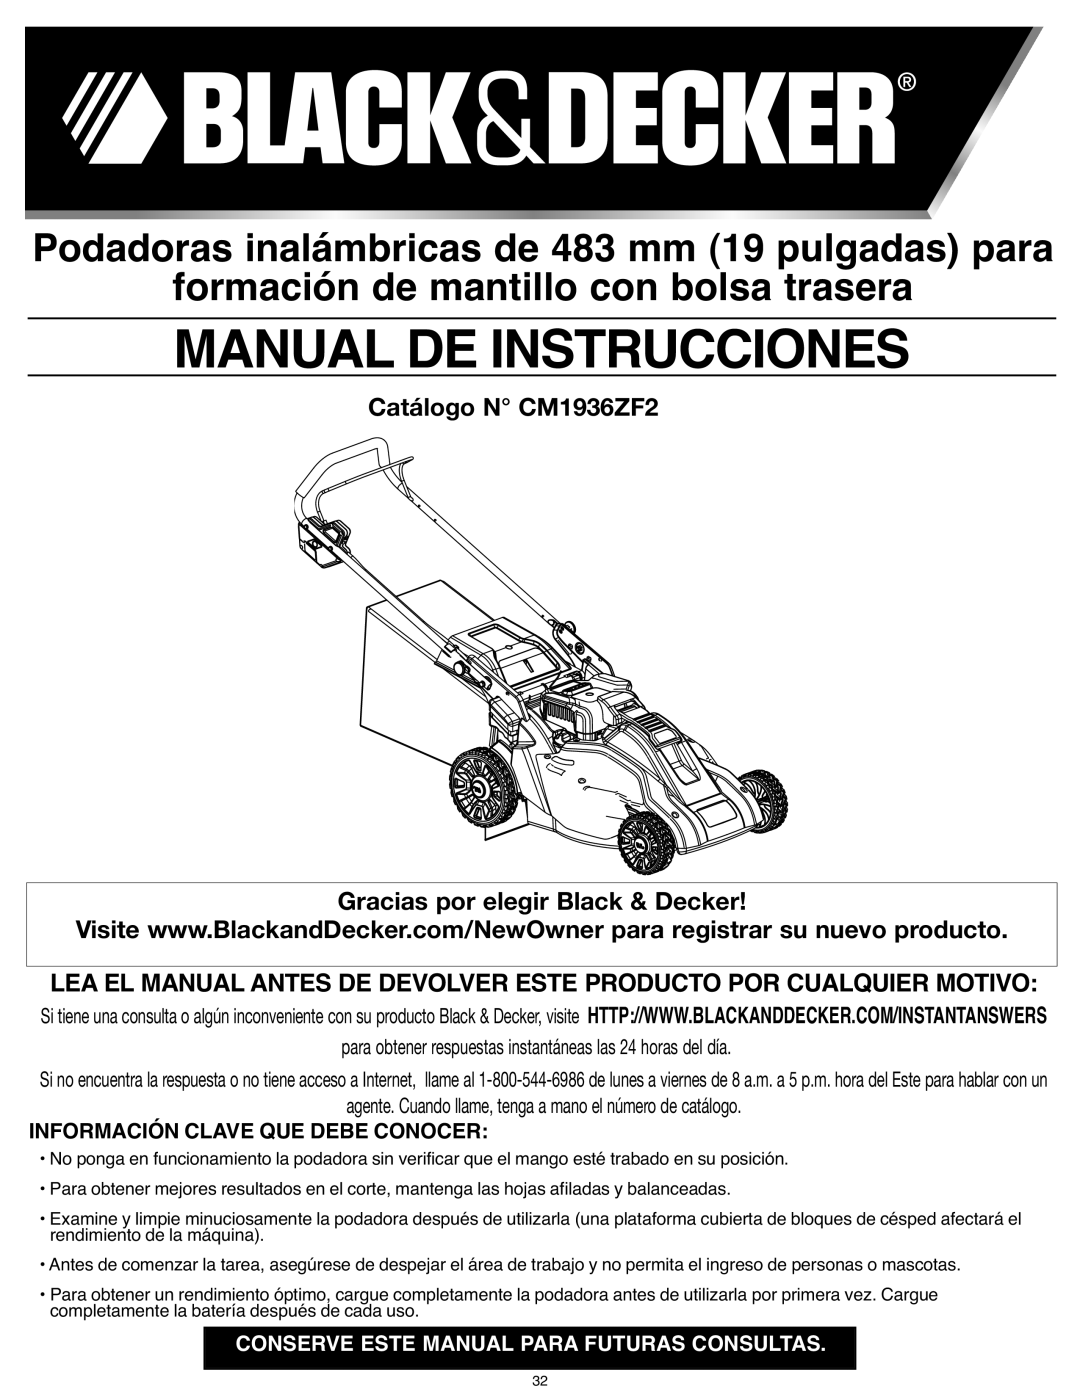 Black & Decker Manual De Instrucciones, Podadoras inalámbricas de 483 mm 19 pulgadas para, Catálogo N CM1936ZF2 